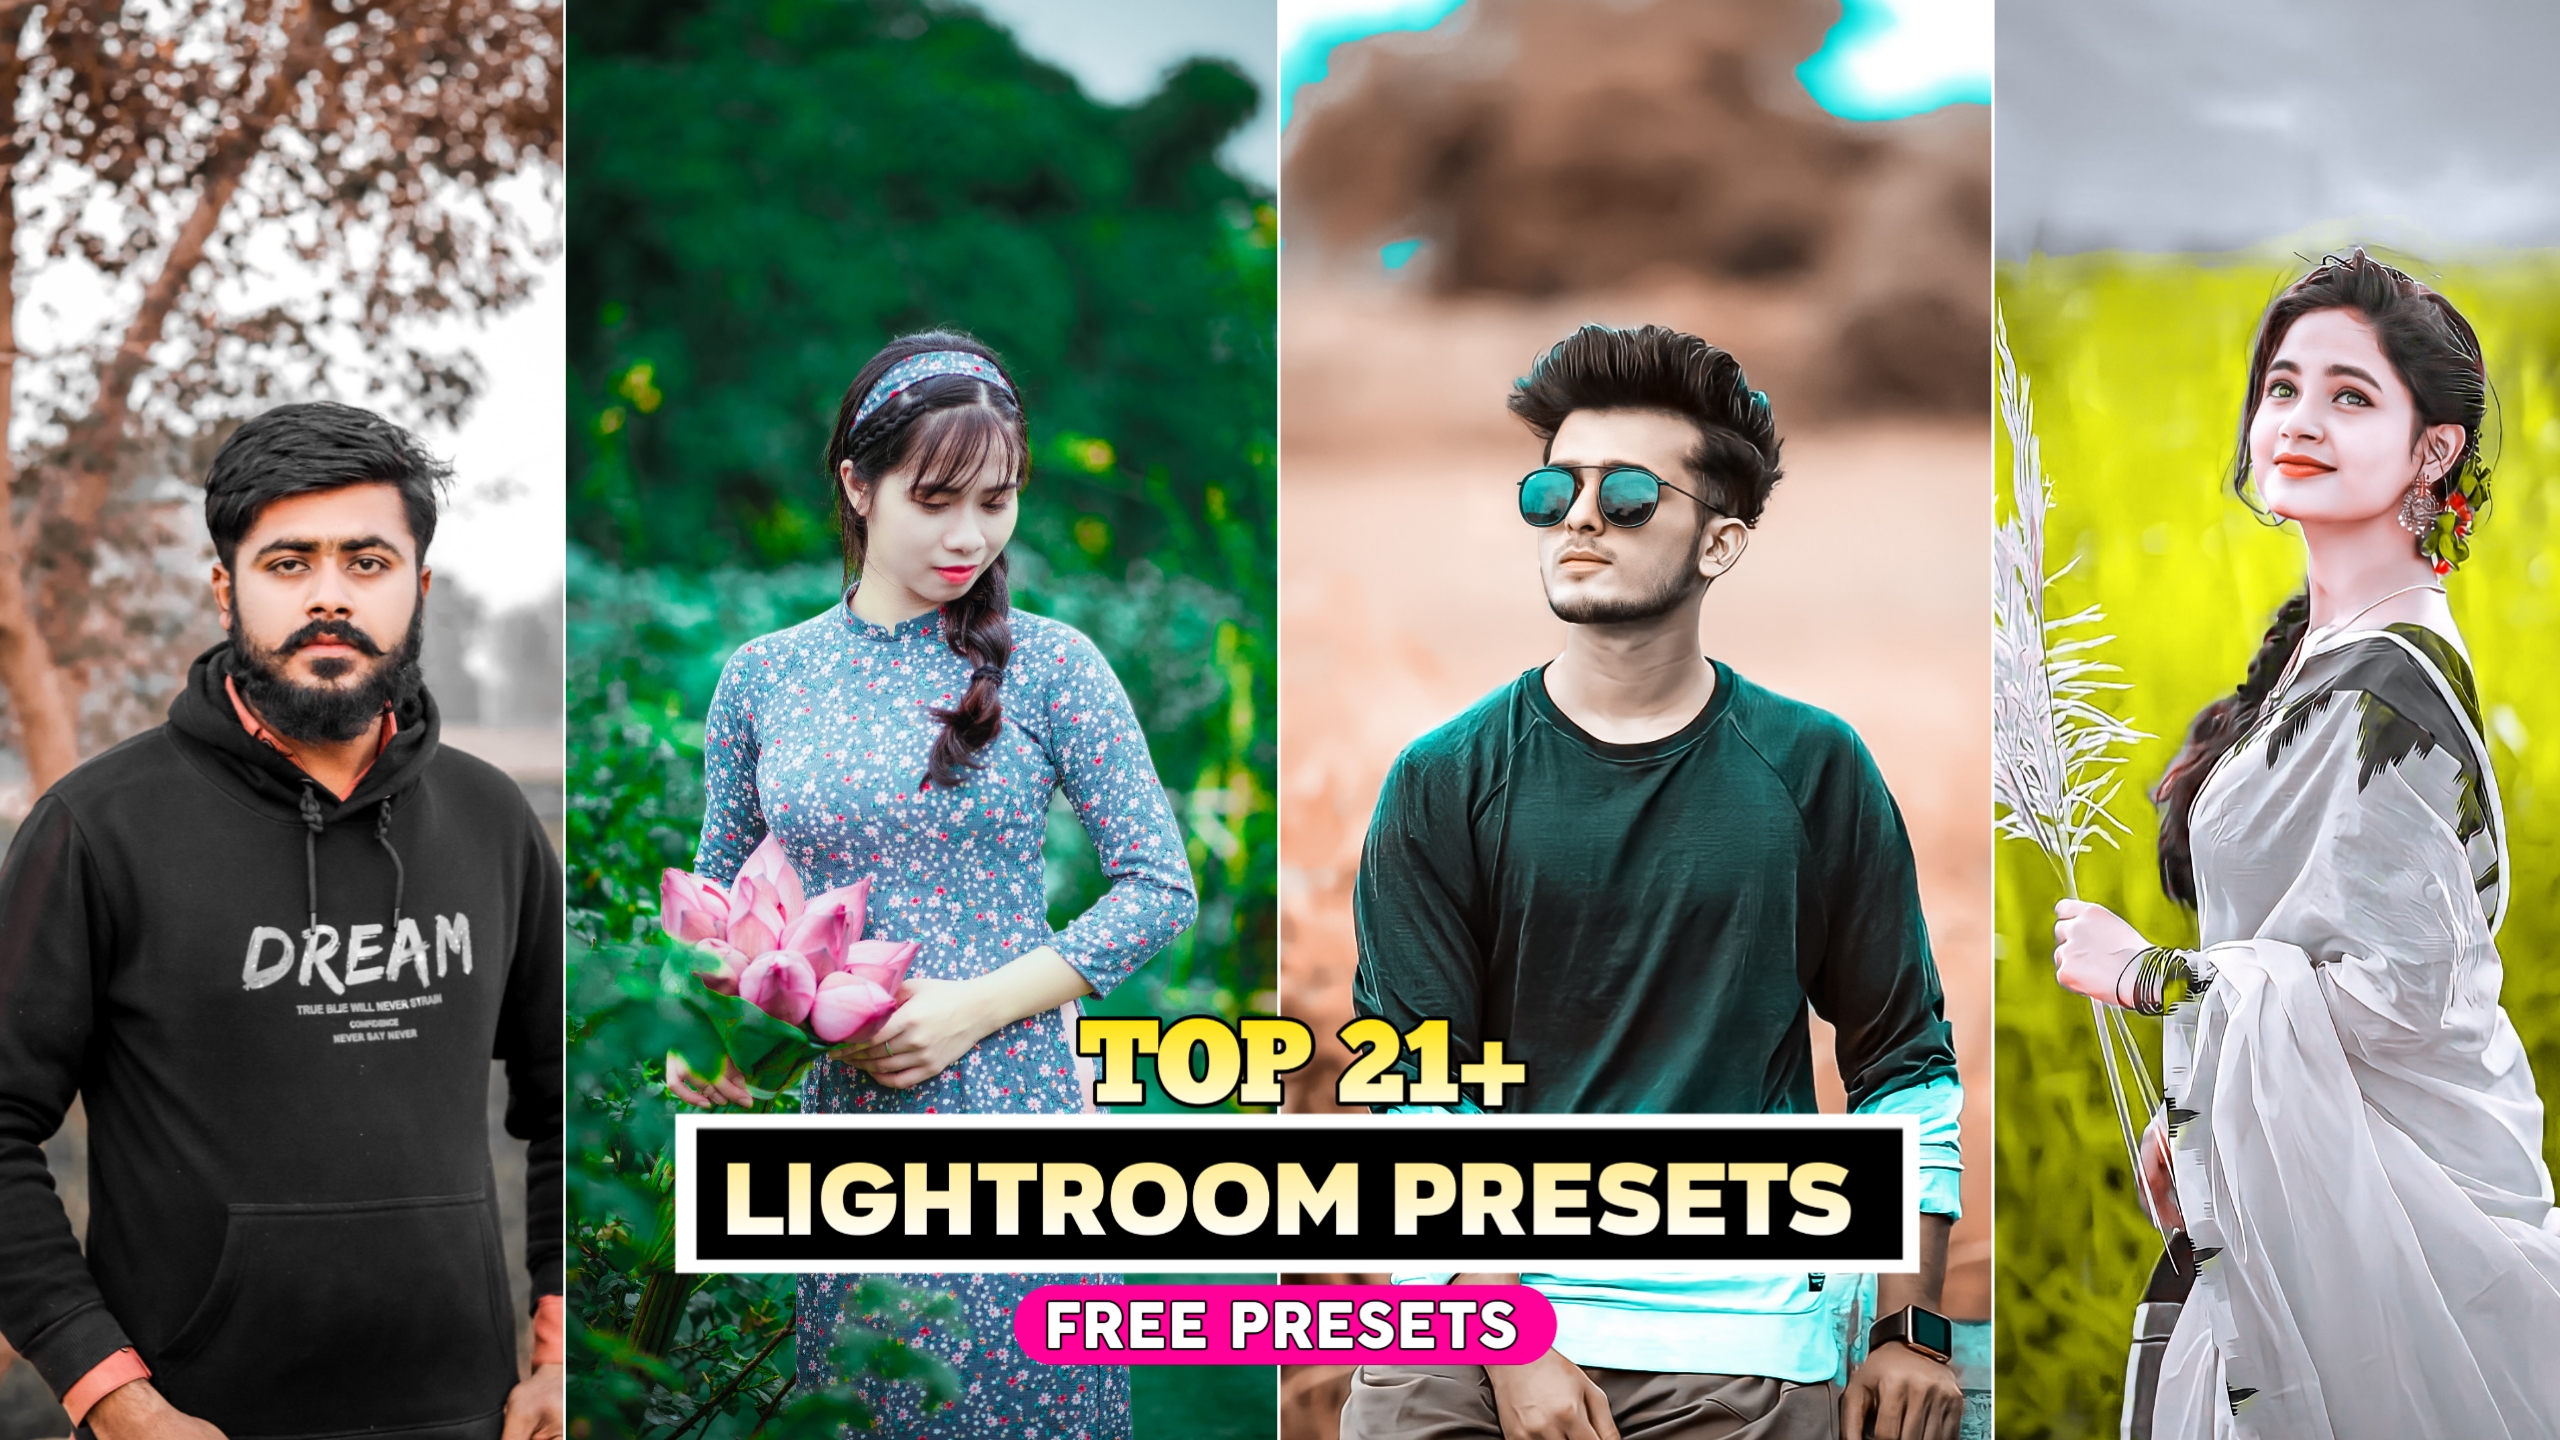 21+ Lightroom presets free download